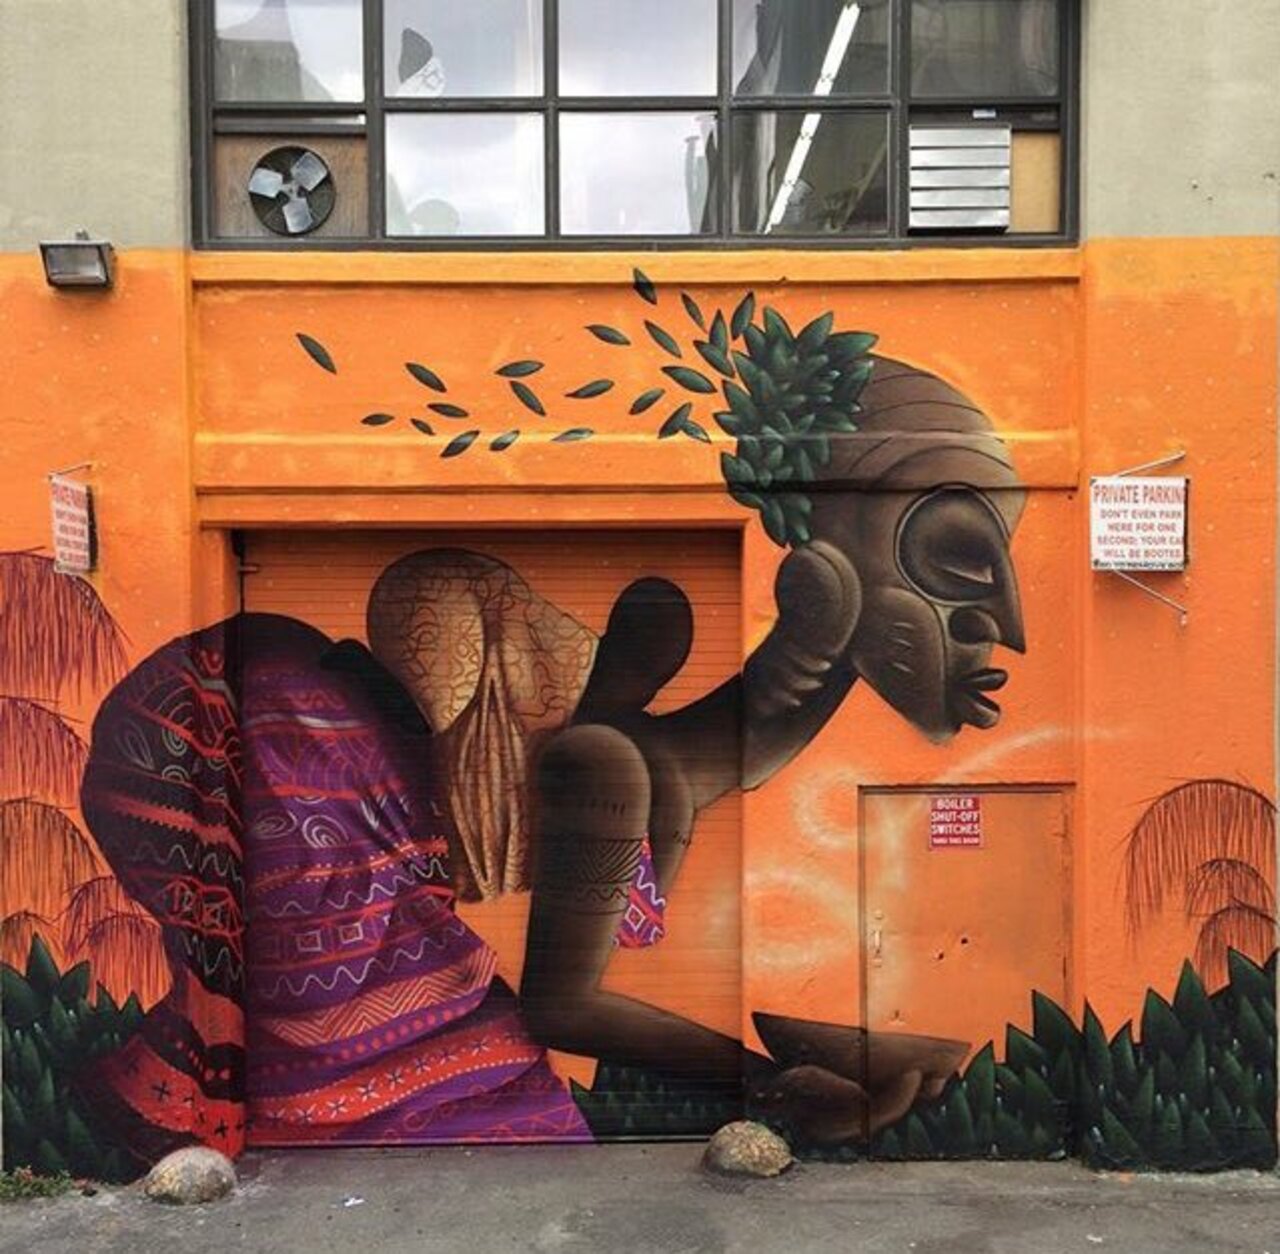 New Street Art by Alexandre Keto in NYC 

#art #graffiti #mural #streetart https://t.co/l9NEU6xqRQ